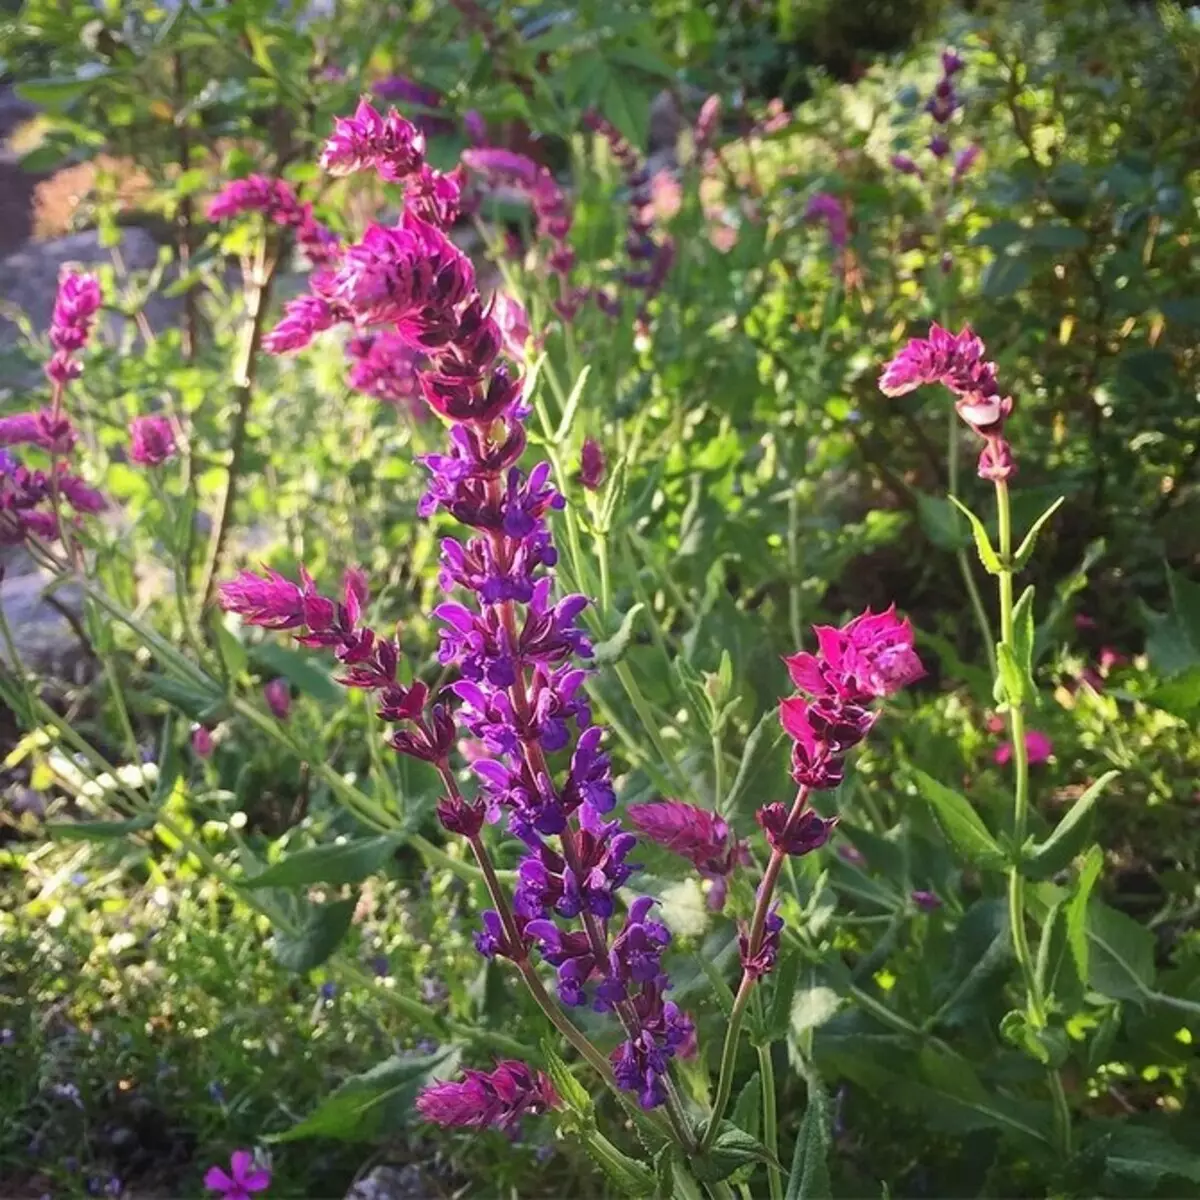 Neparasti ziedi jūsu dārzam: 7 šķirnes, kuras jūs neredzēsiet no kaimiņiem 27920_15